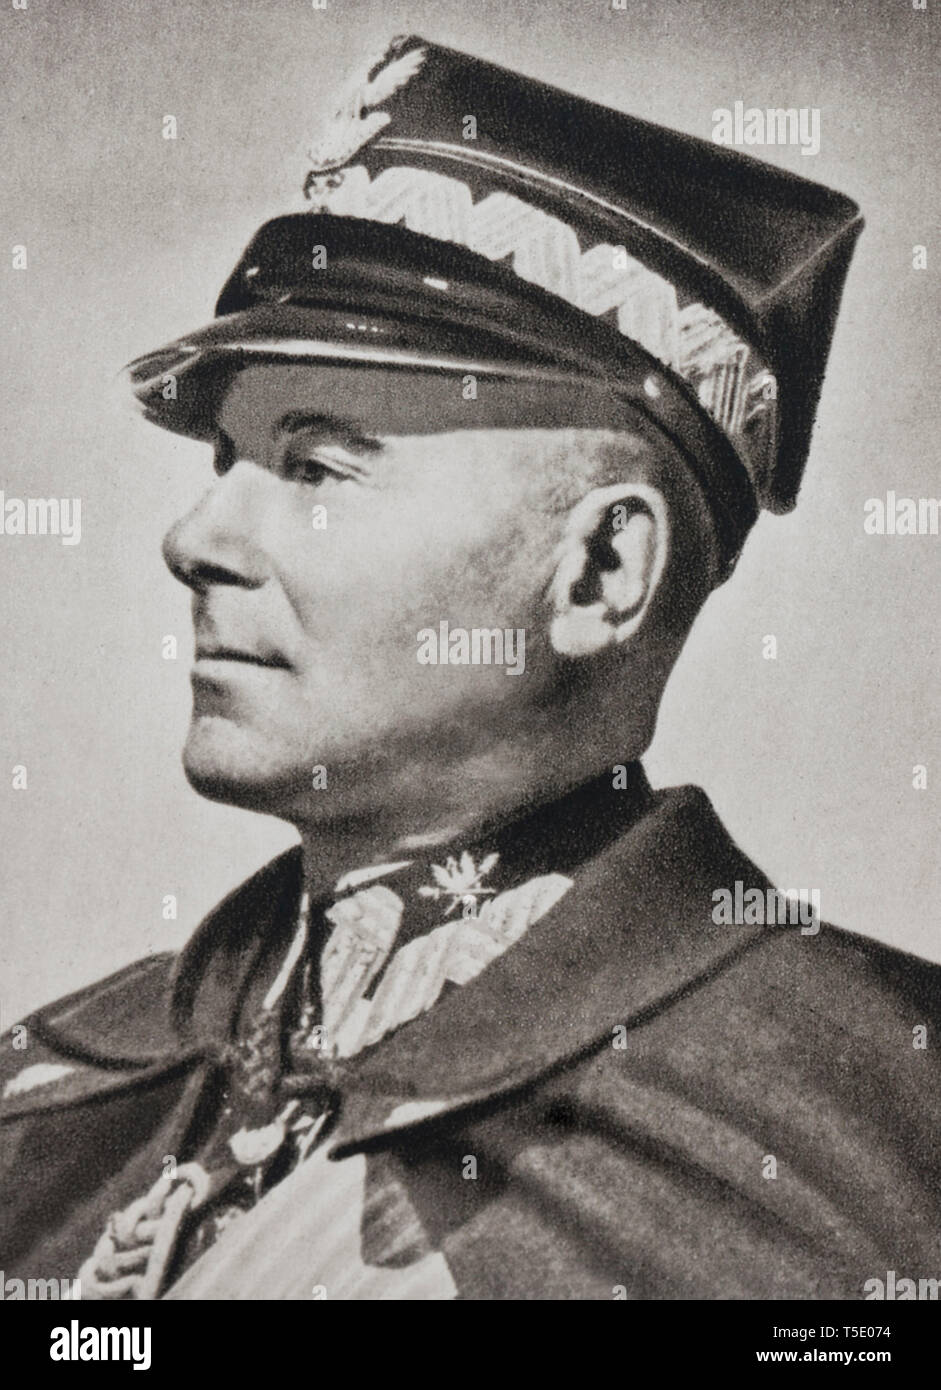 Ritratto del maresciallo Edward ły Rydz-Smig(1886 - 1941), è stato un uomo politico polacco, statista, Maresciallo di Polonia e Comandante in Capo della Polonia f armati Foto Stock